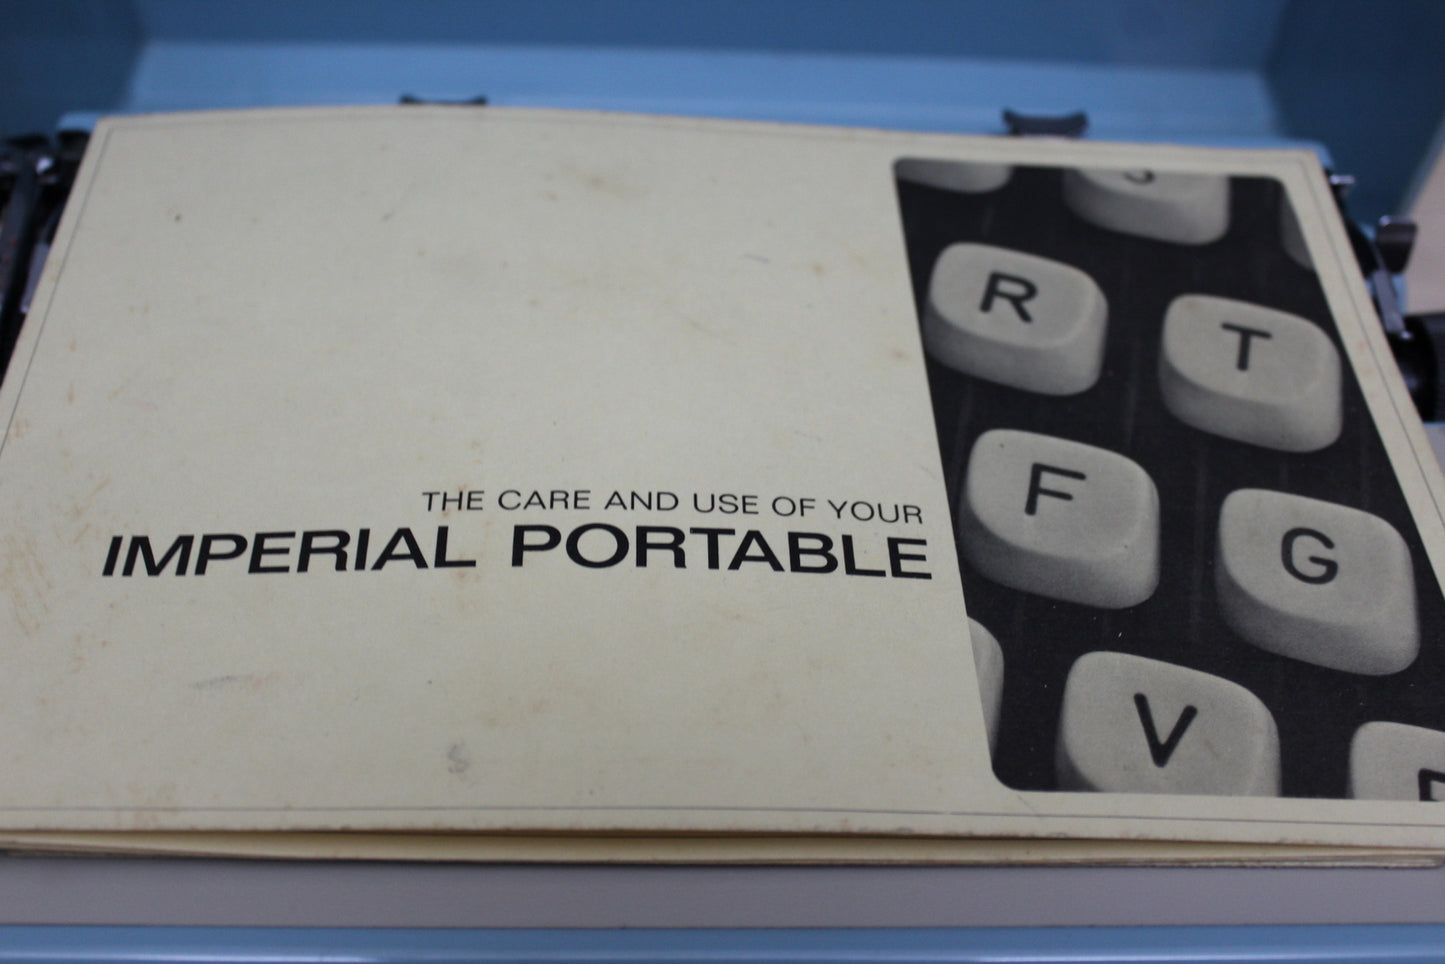 Vintage Imperial Typewriter - Kernow Furniture